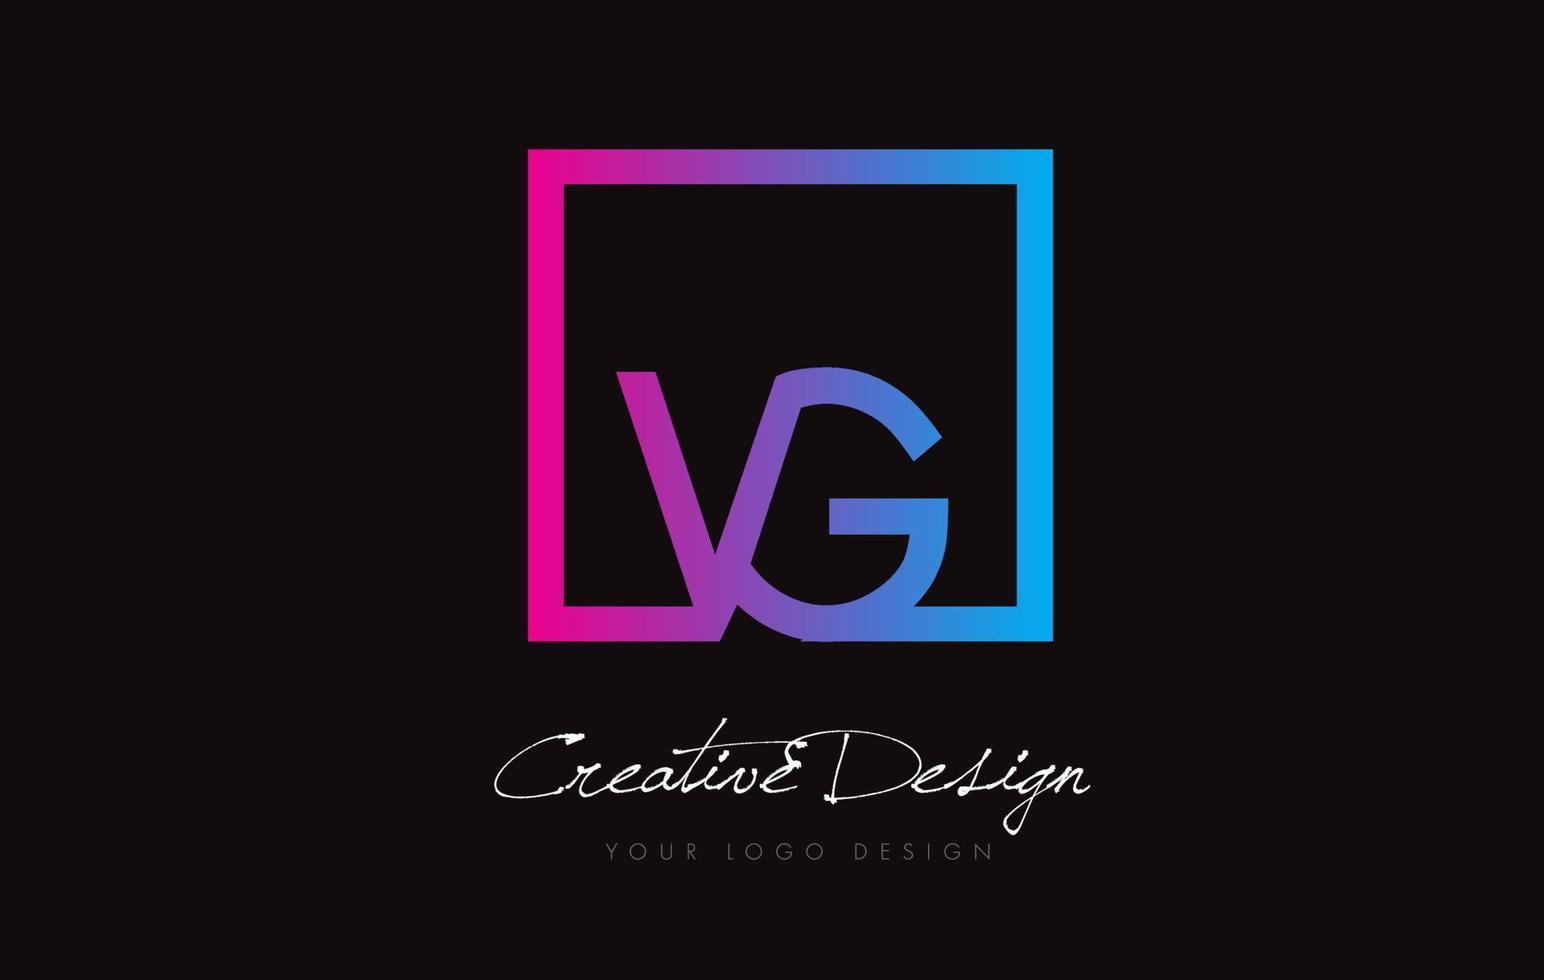 création de logo de lettre de cadre carré vg avec des couleurs bleu violet. vecteur